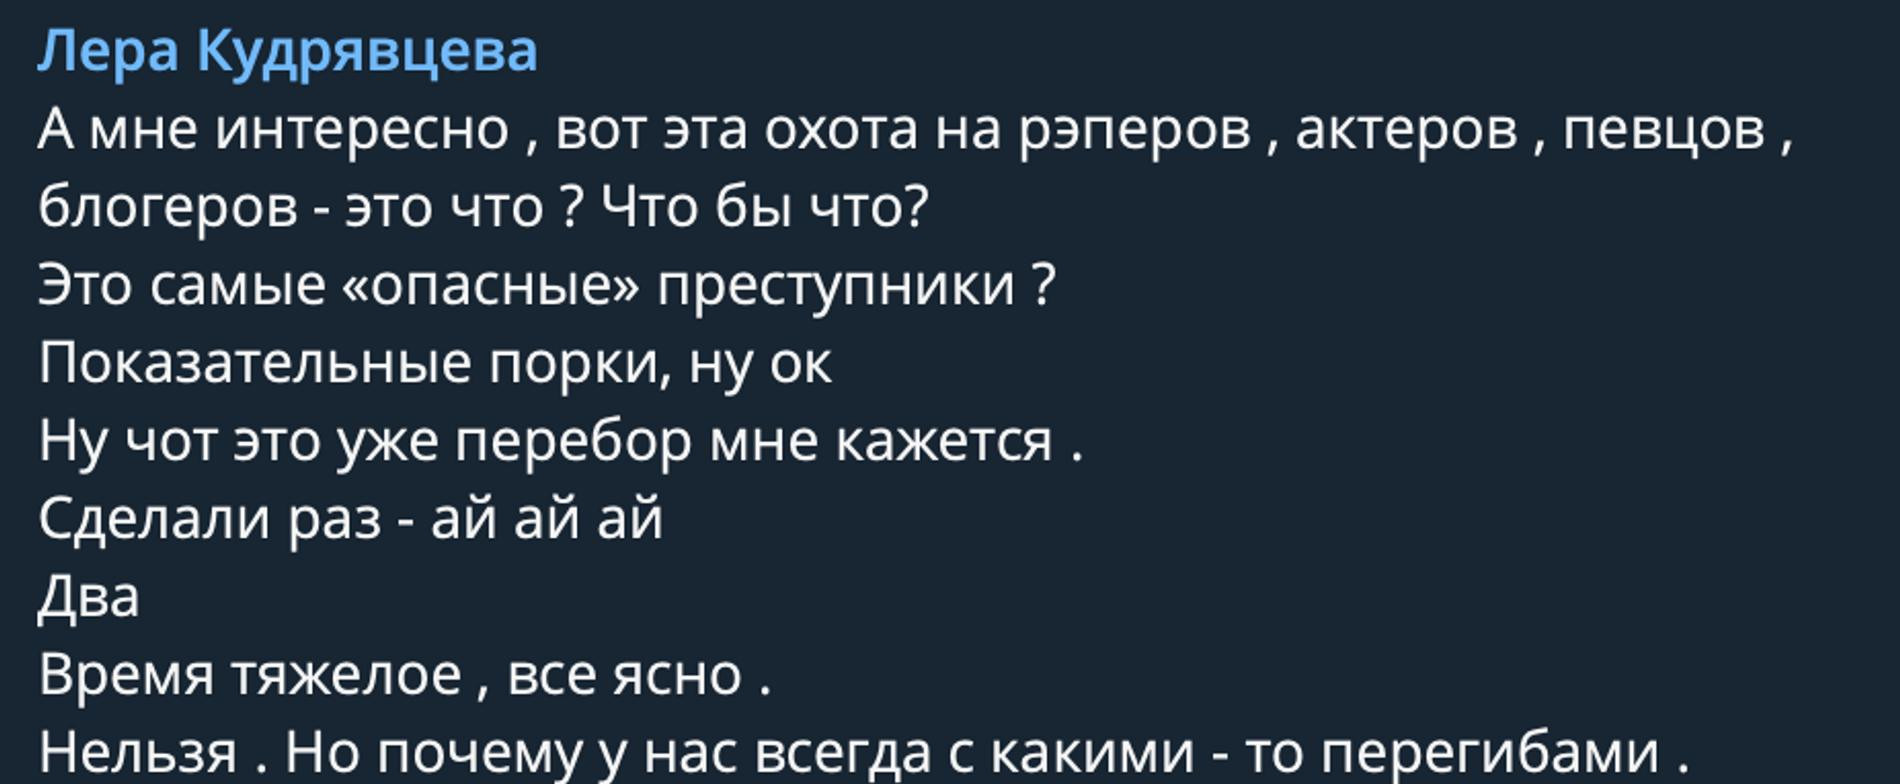 Скрин из Telegrm-канала Леры Кудрявцевой